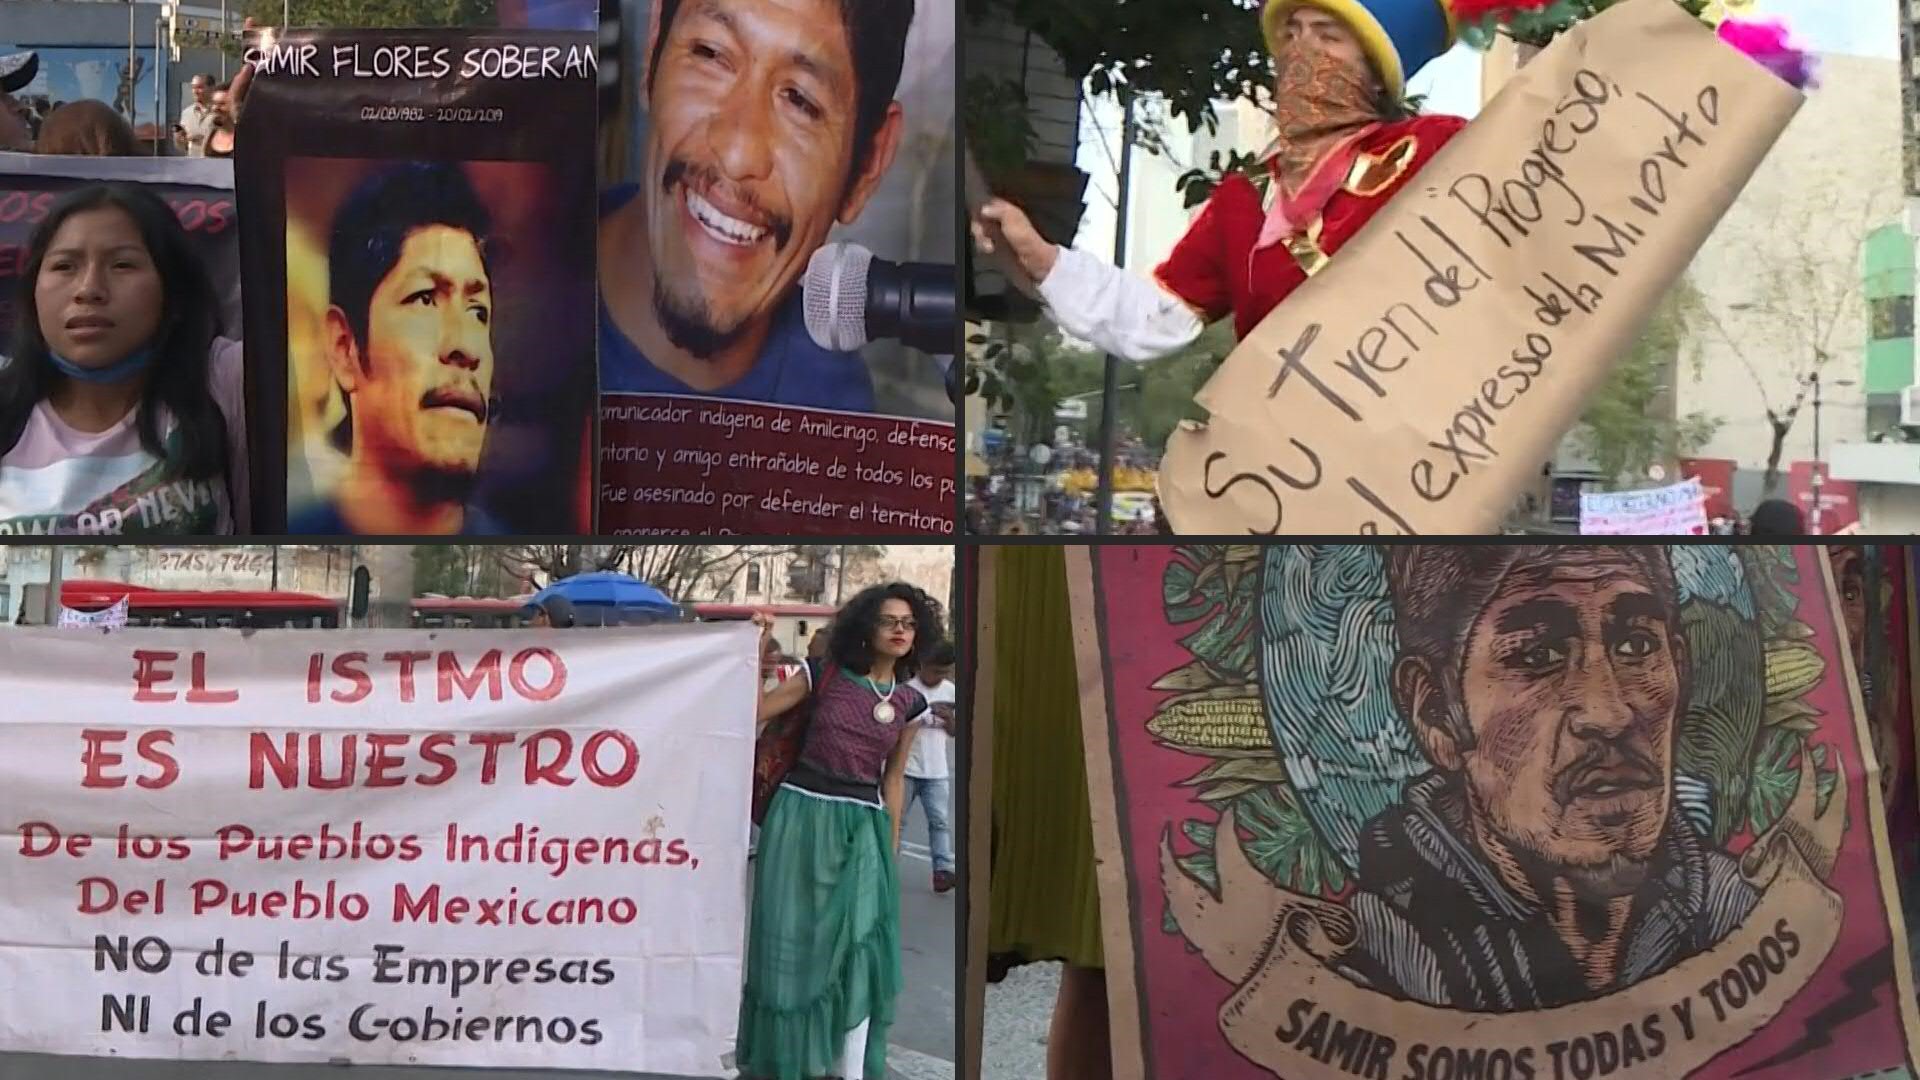 Cientos de personas protestaron el viernes en Ciudad de México al cumplirse un año de la muerte de Samir Flores, un activista que se oponía a un proyecto eléctrico del gobierno federal y que fue asesinado a balazos.